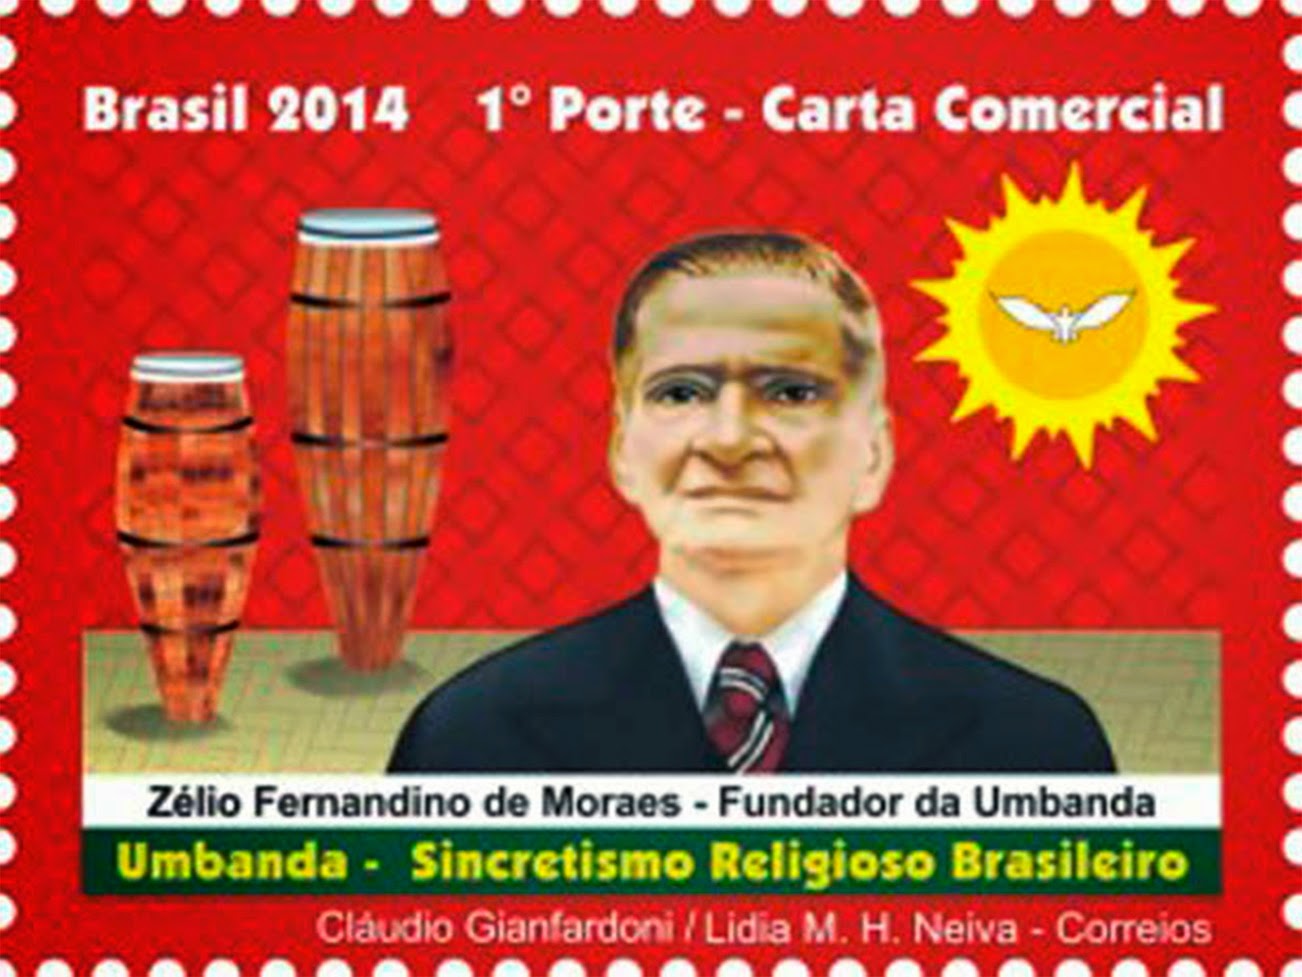 Zelio Fernandino de Morais, Atabaque, Sol, Oxalá, Espírito Santo